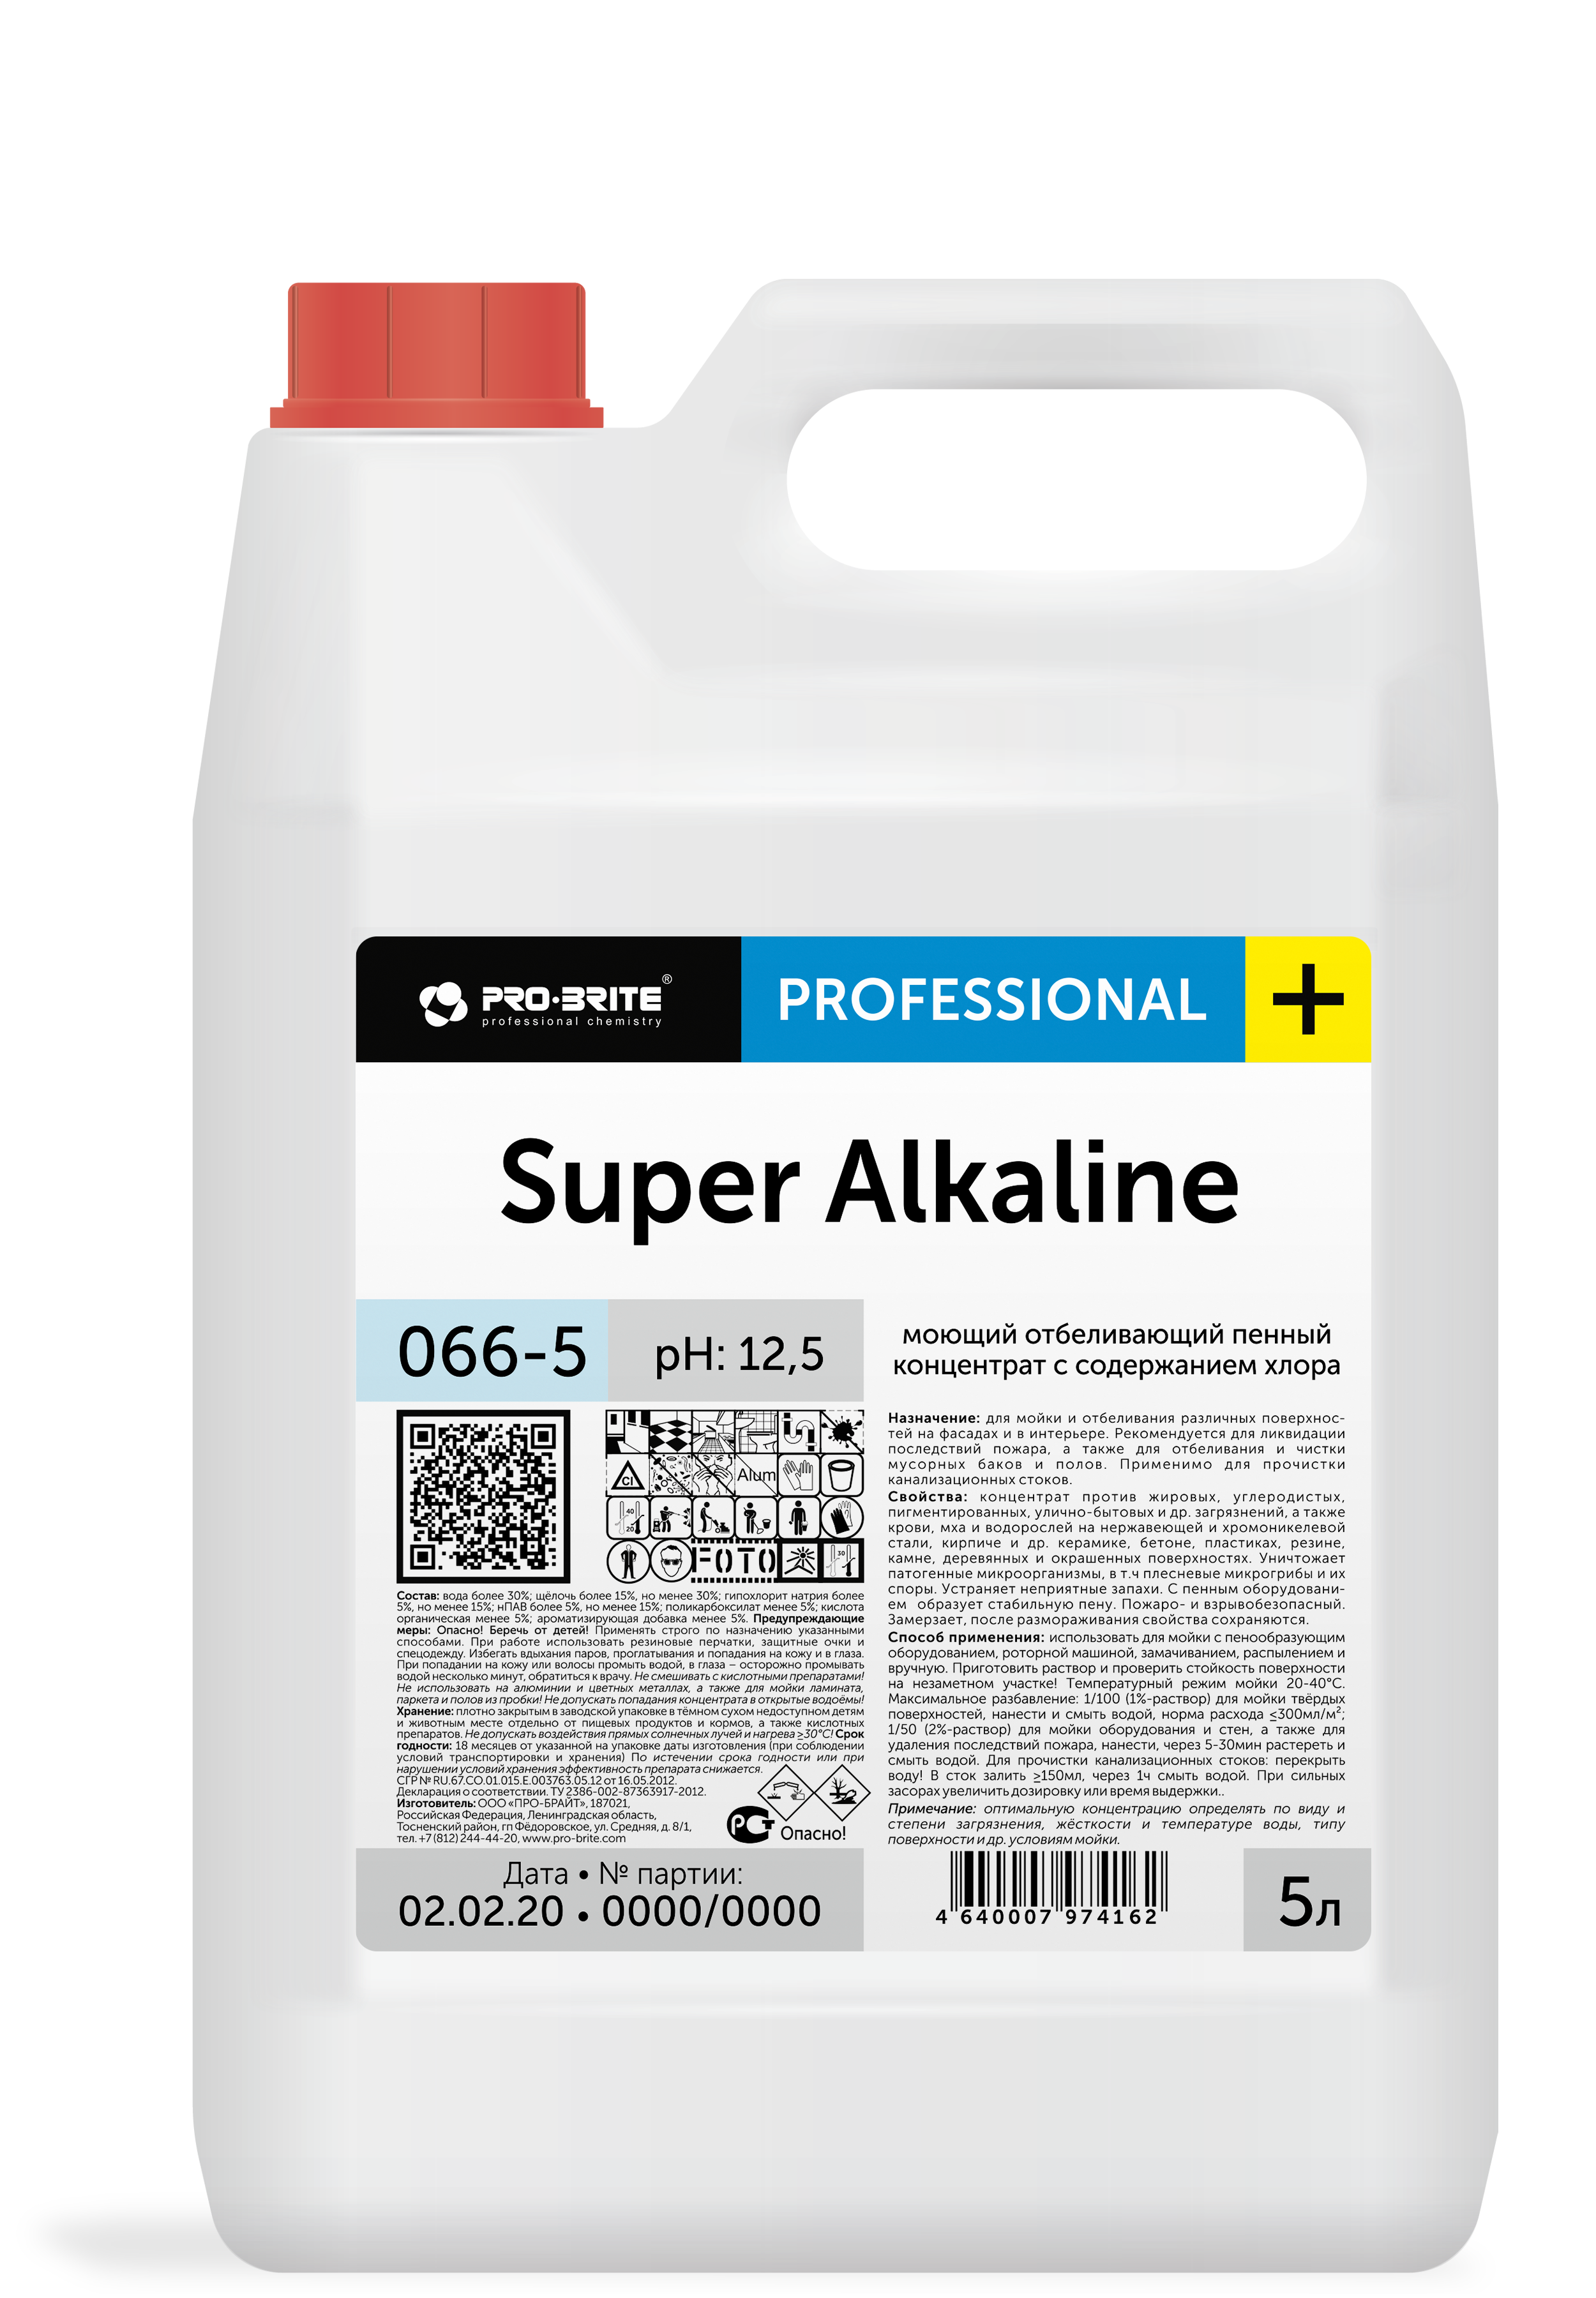 Super Alkaline